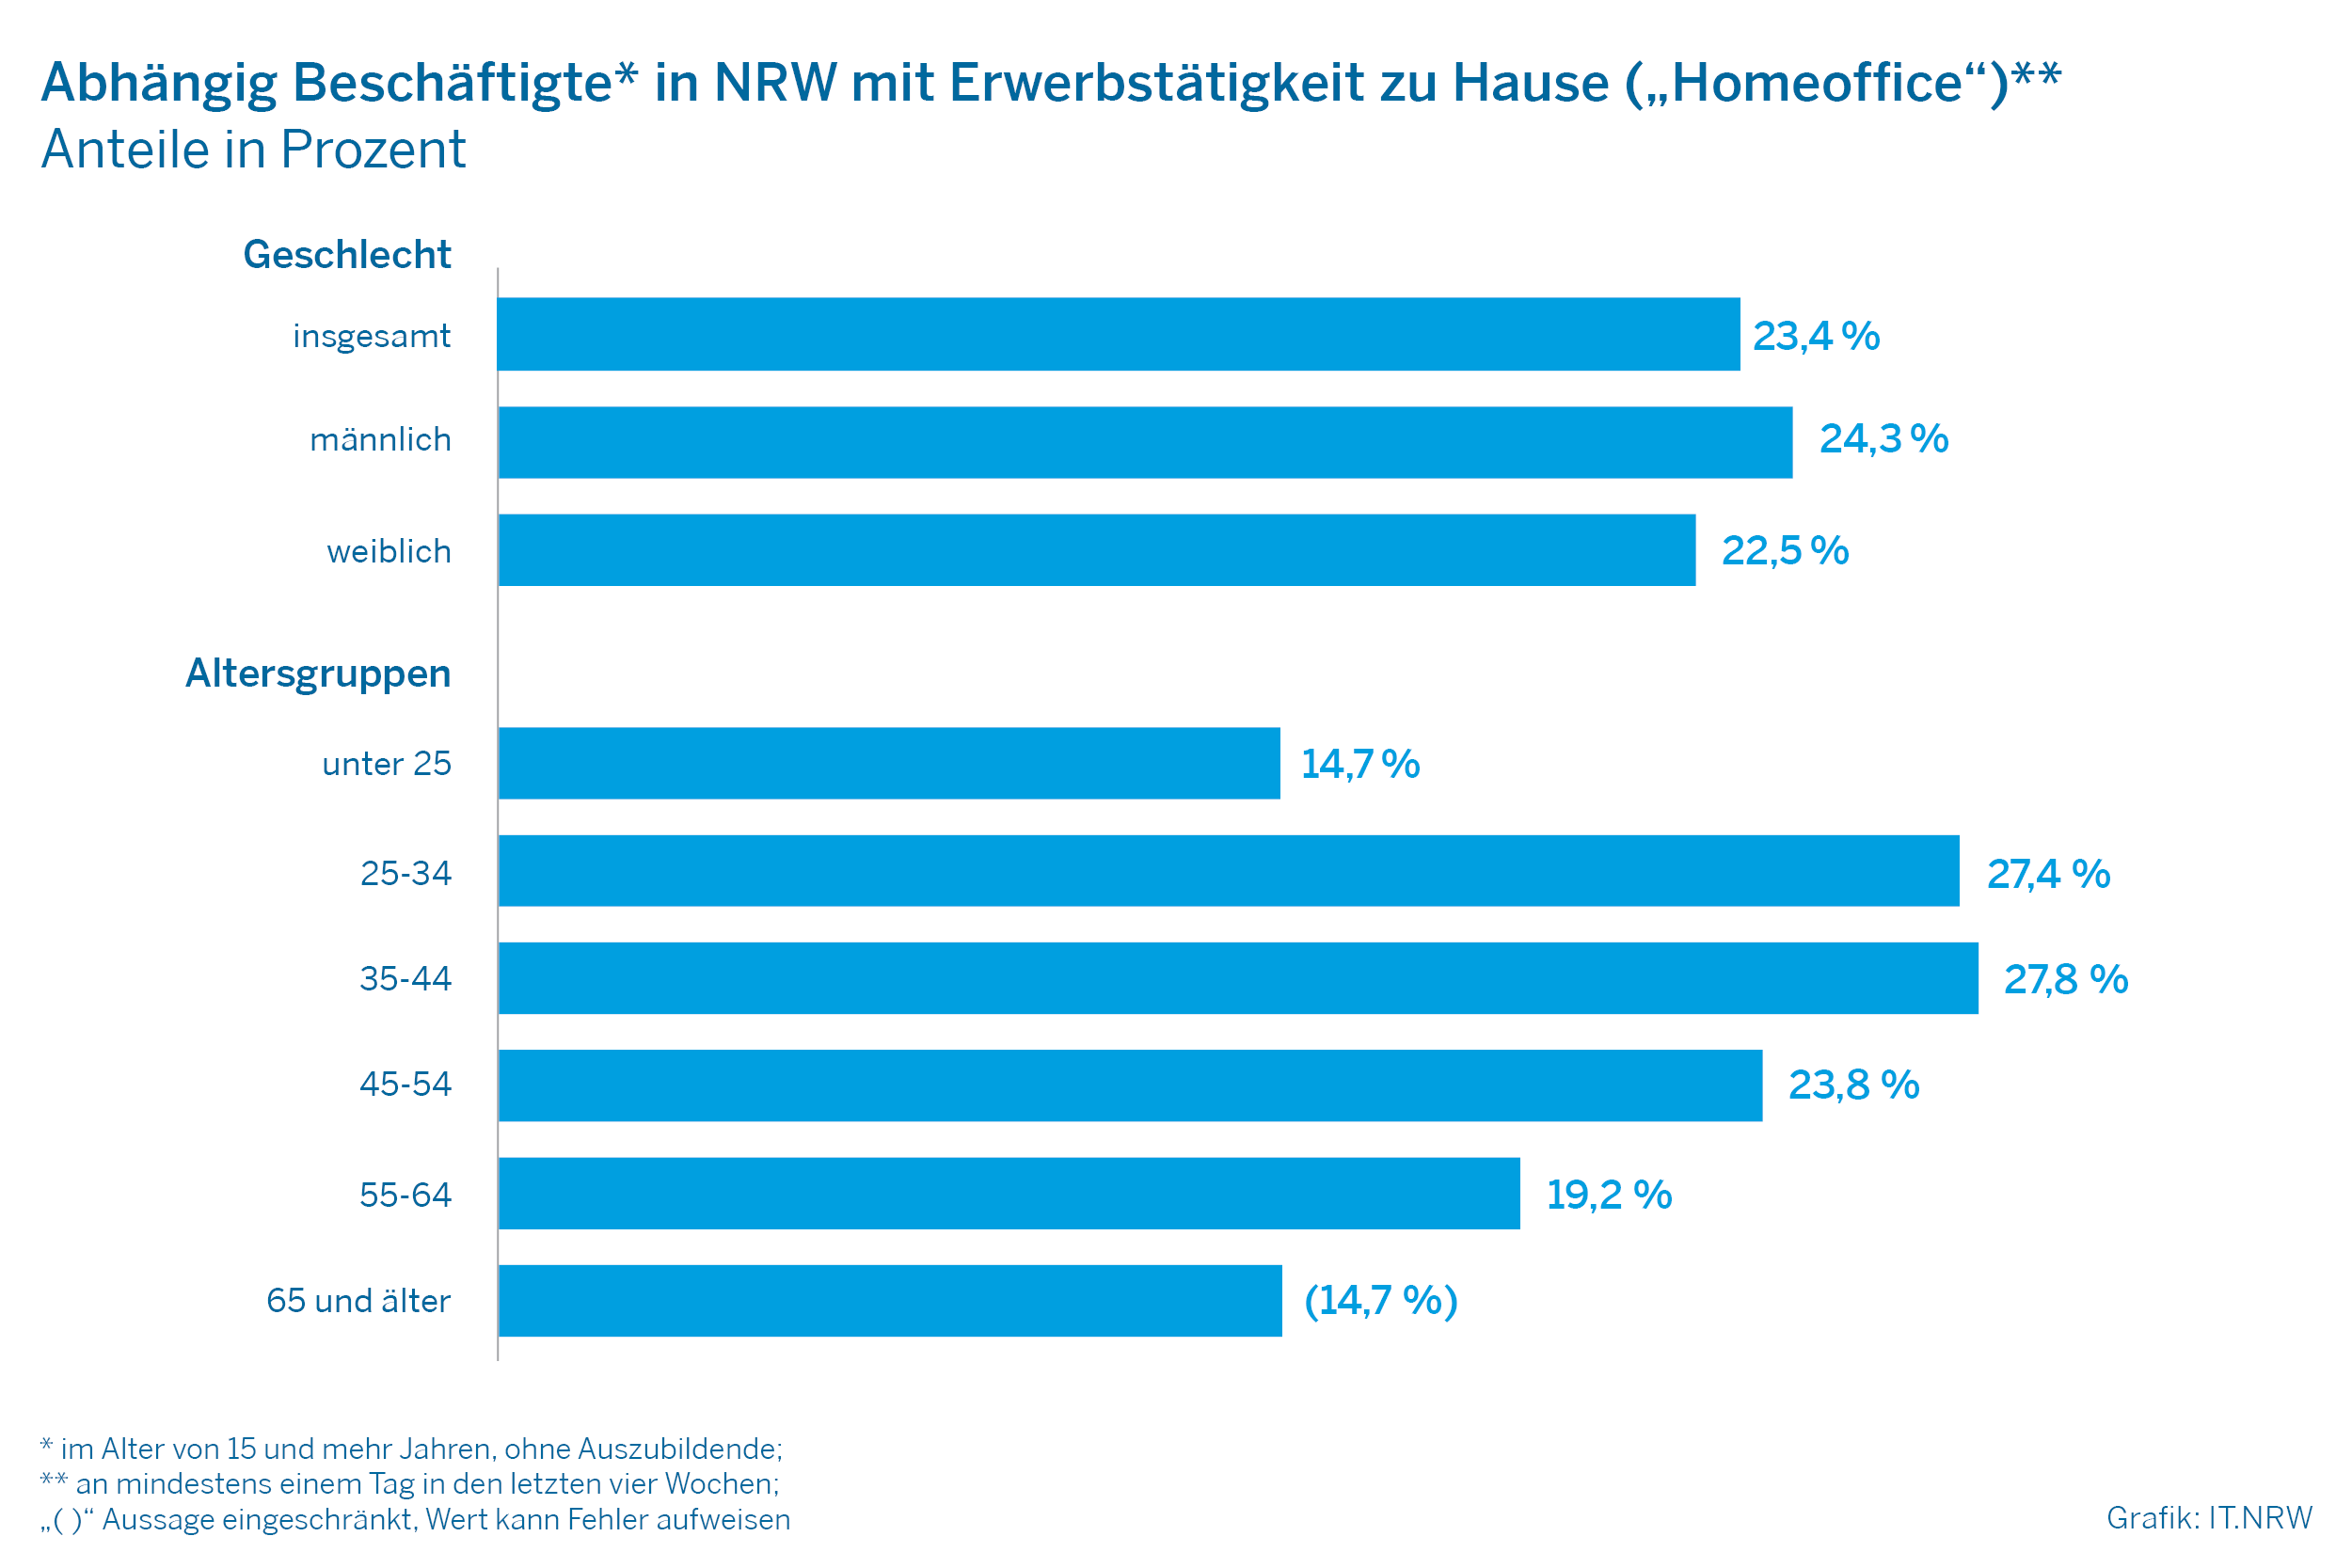 Abhängig Beschäftigte in NRW mit Erwerbstätgikeit zu Hause ("Homeoffice")